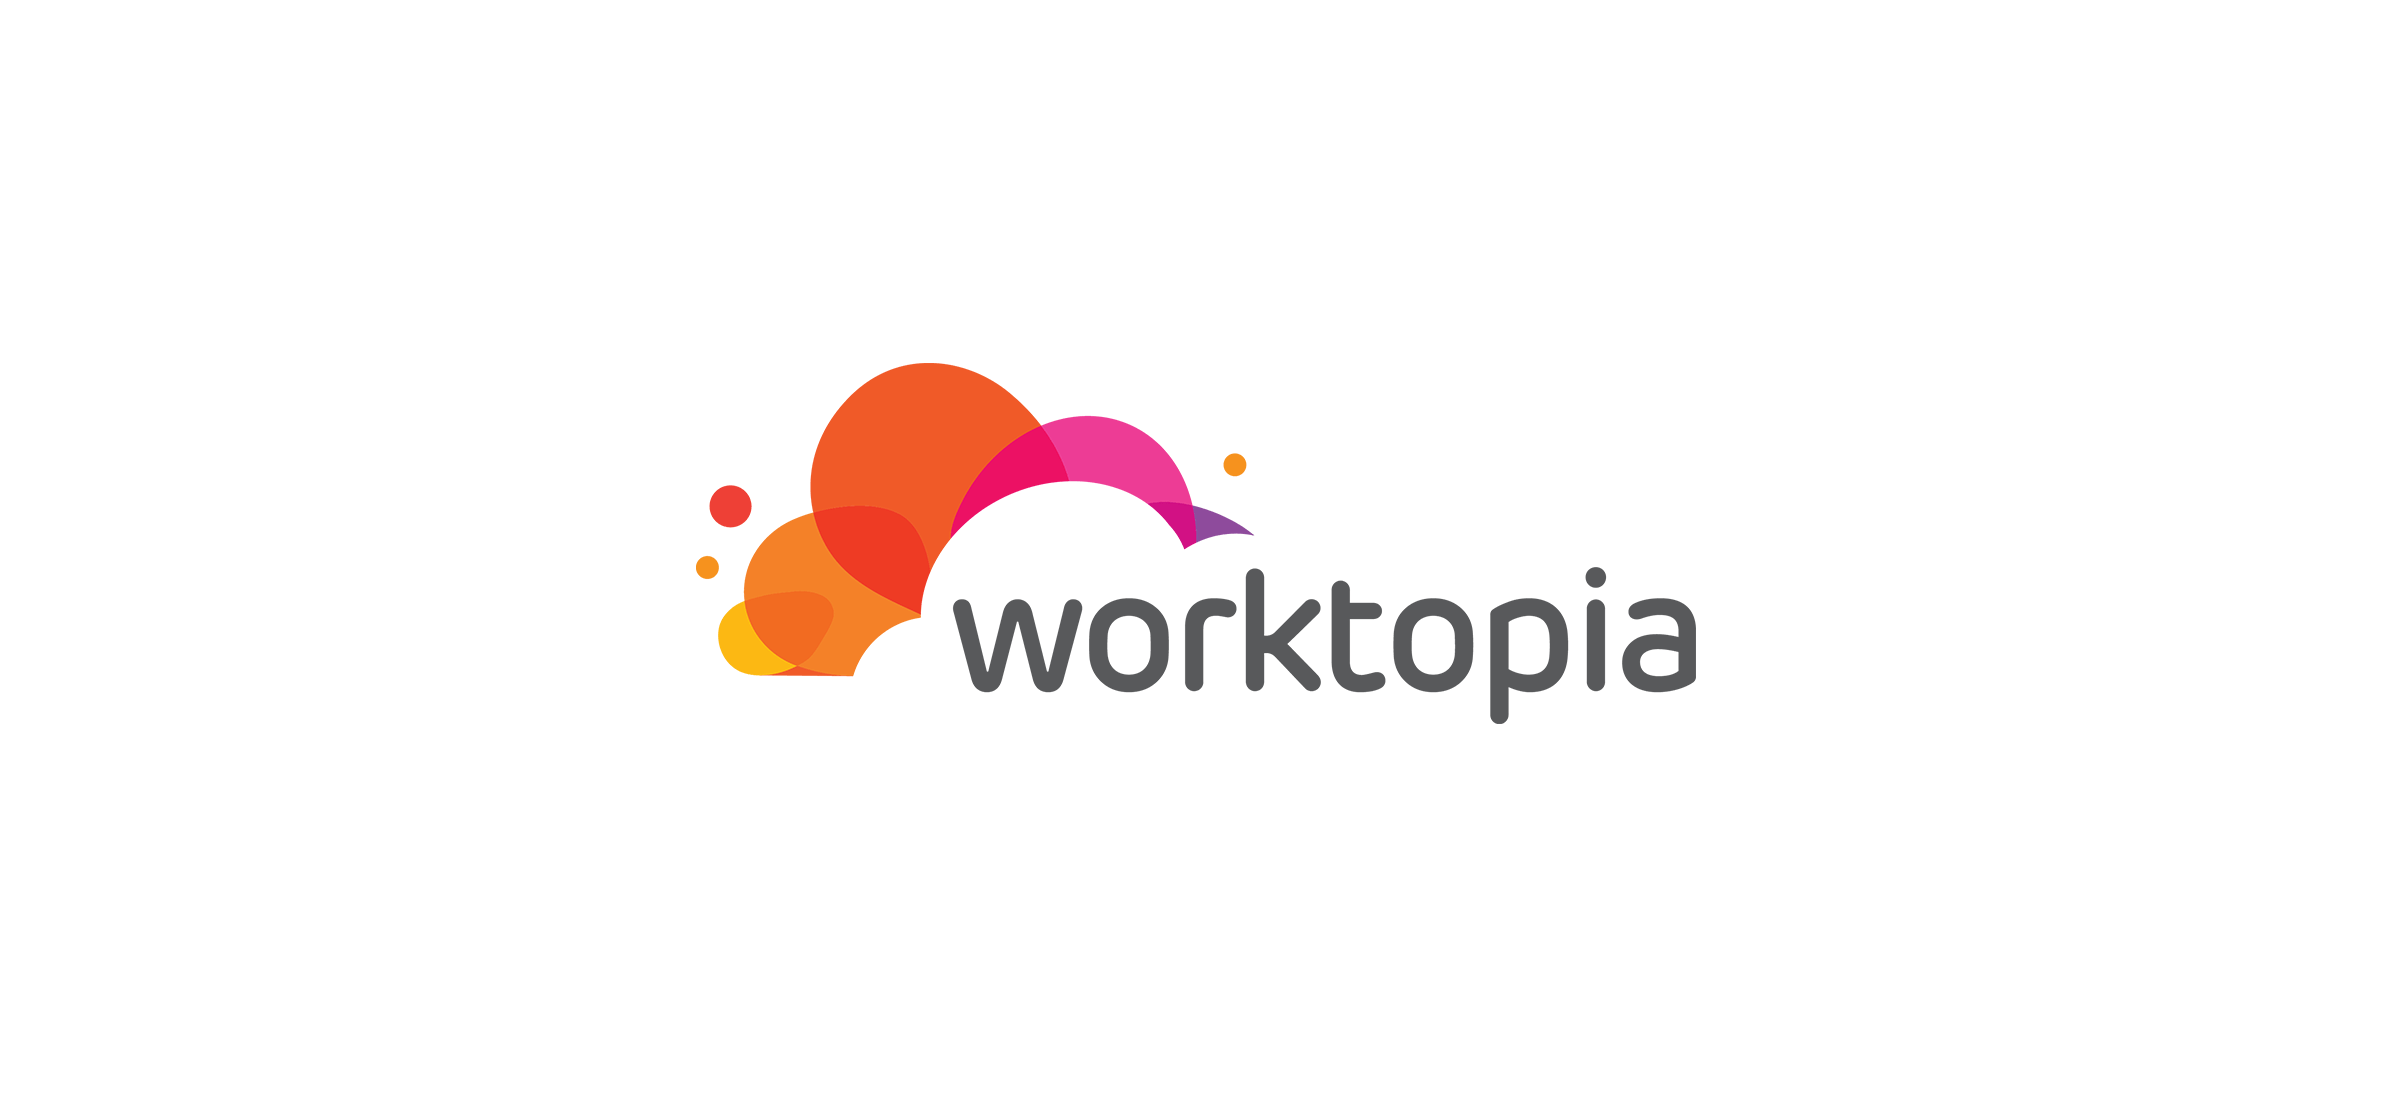 The Worktopia logo